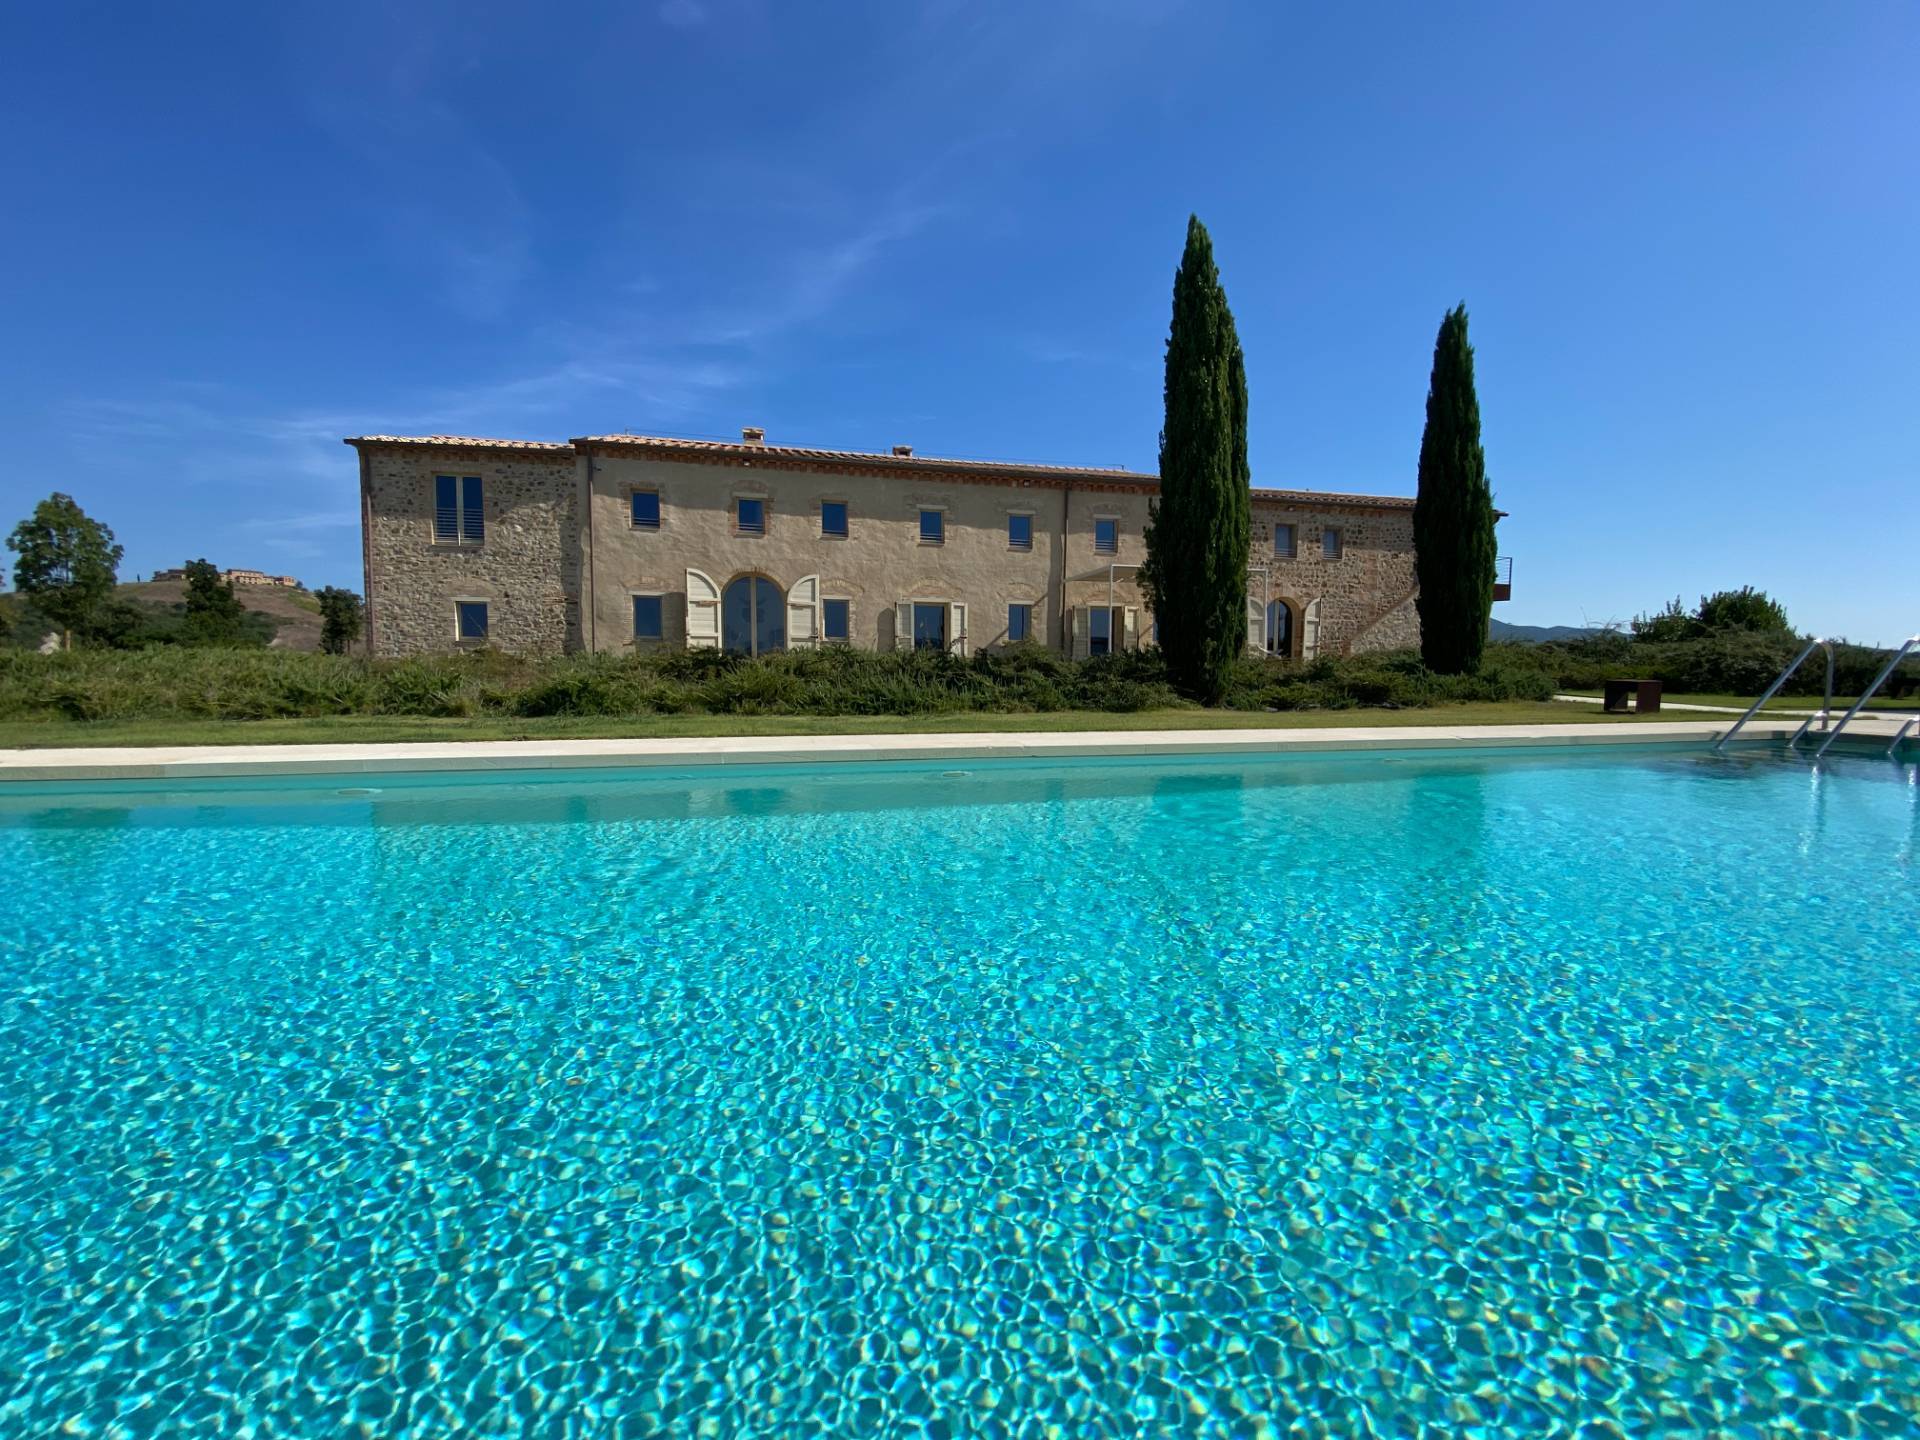 1538-Prtoprietà prestigiosa in un'oasi di pace e bellezza naturalistica-Volterra-1 Agenzia Immobiliare ASIP